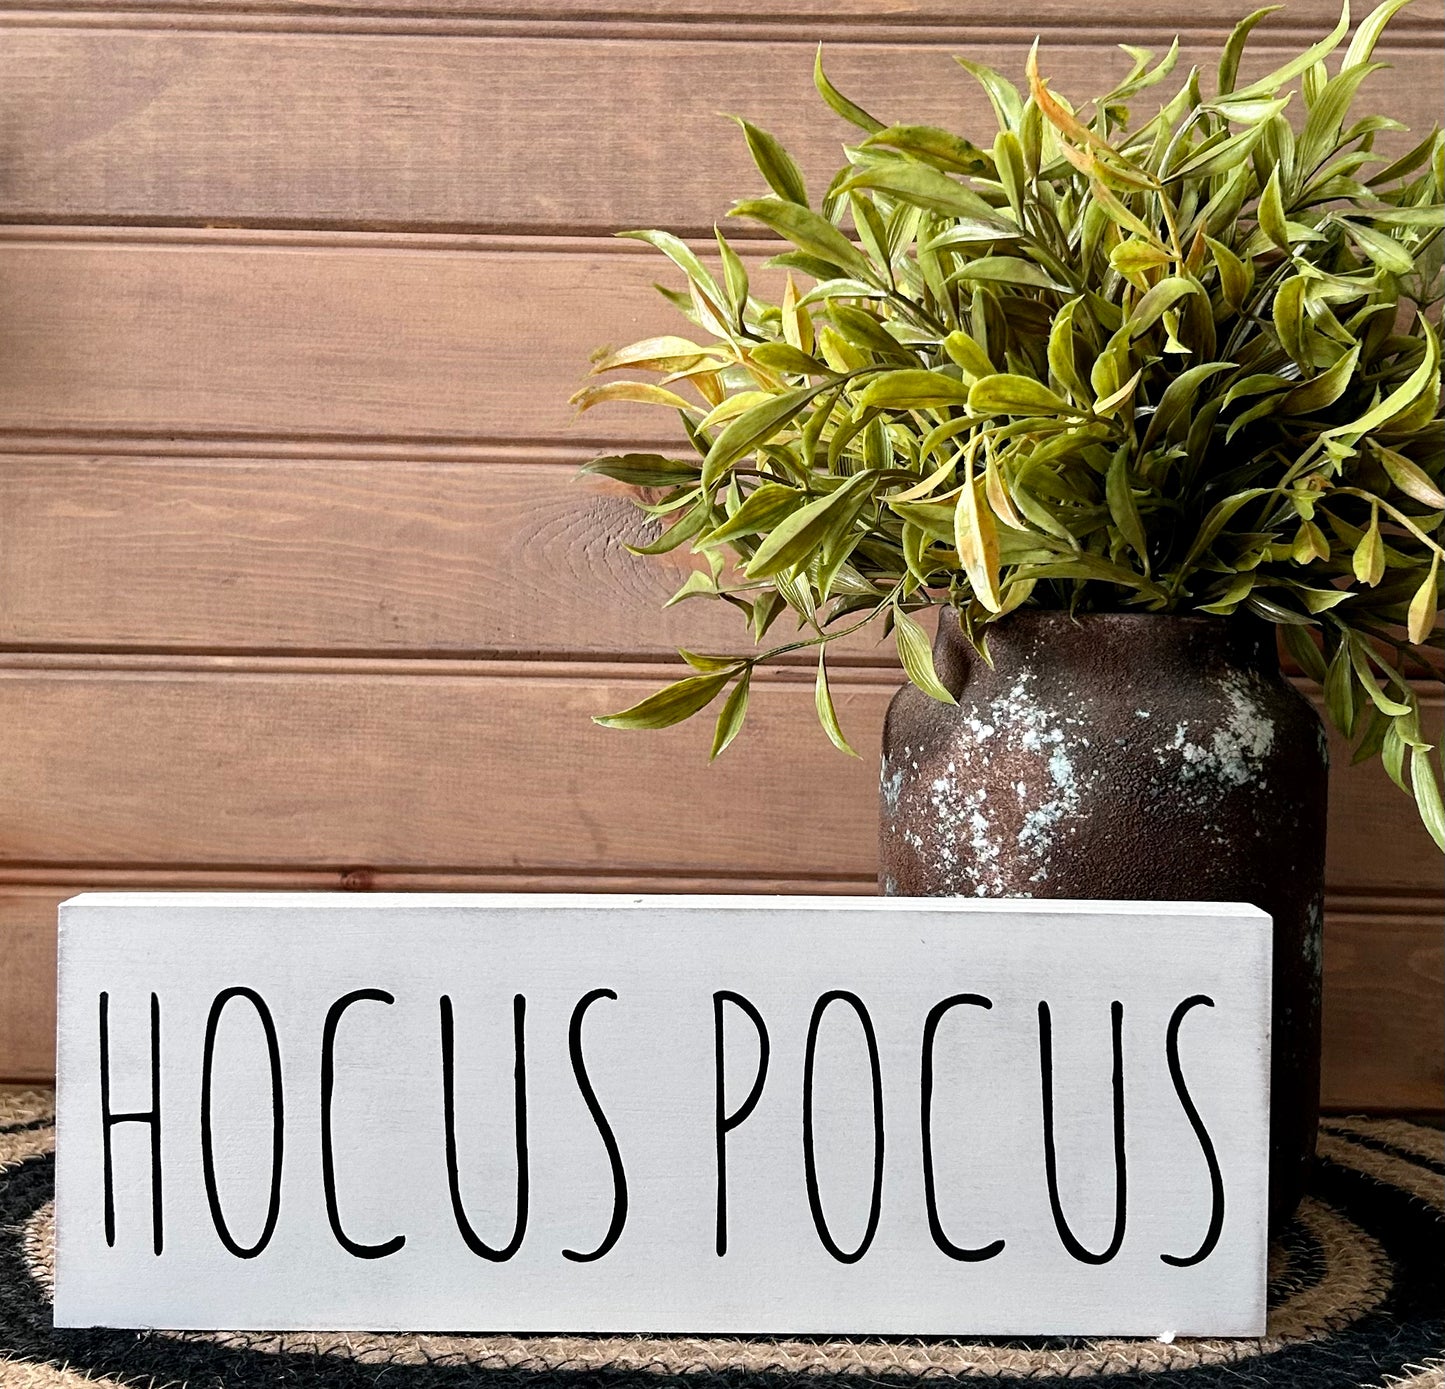 HOCUS POCUS - Rustic Wood Shelf Sign